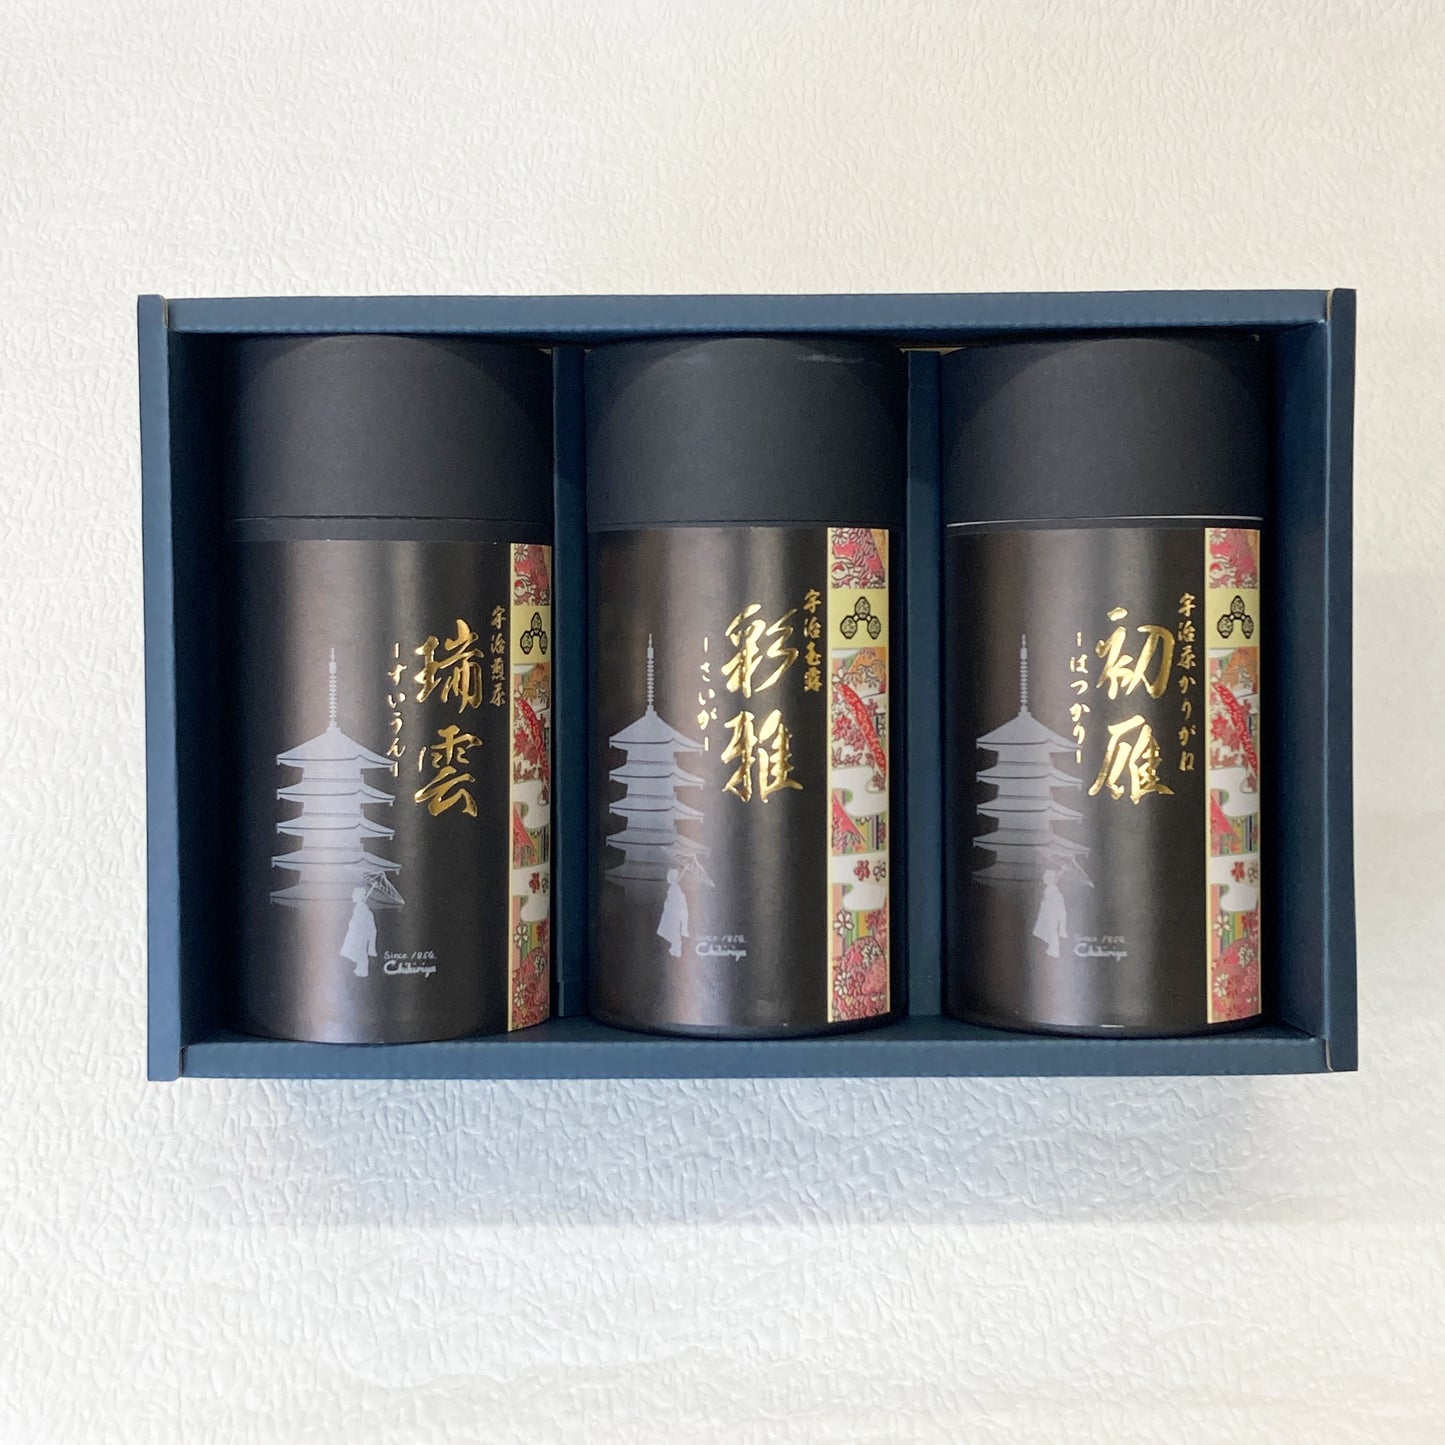 [Tea Box] Chikiriya Premium Selection Uji Gyokuro "Saiga", Uji Sencha “Zuiun”, Uji Karigane "Hatsukari"